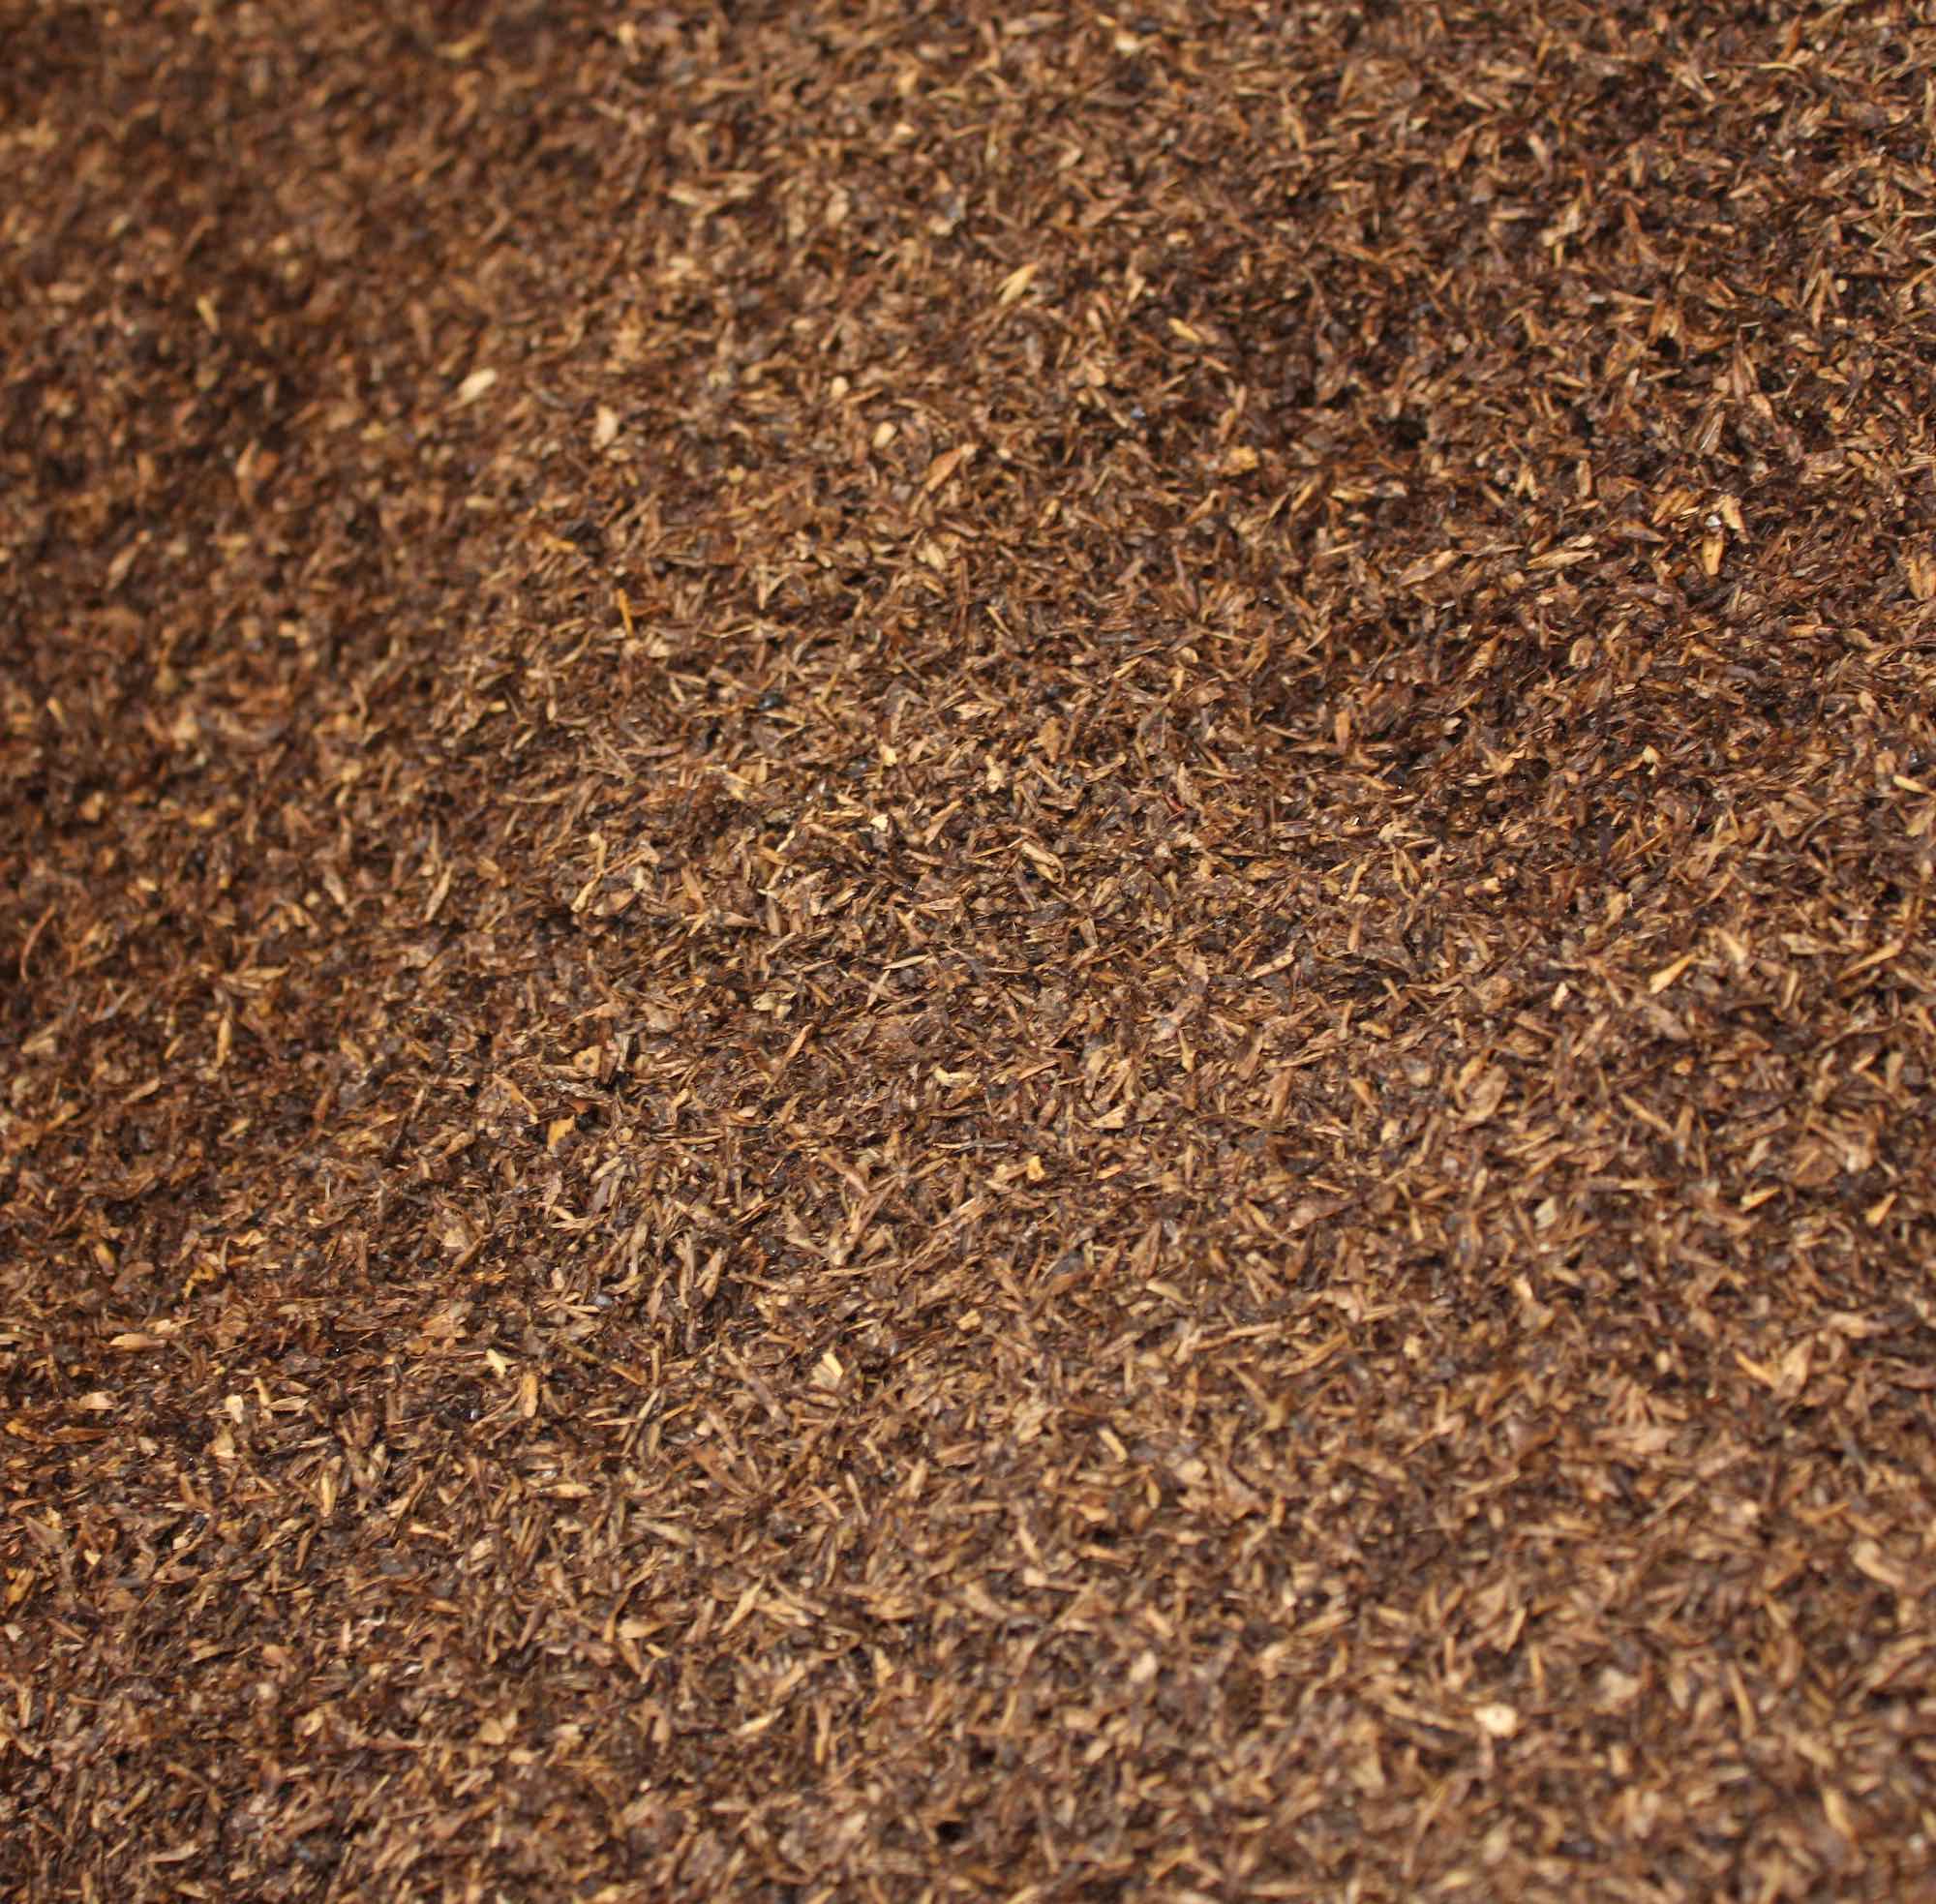 Fine brown grain.